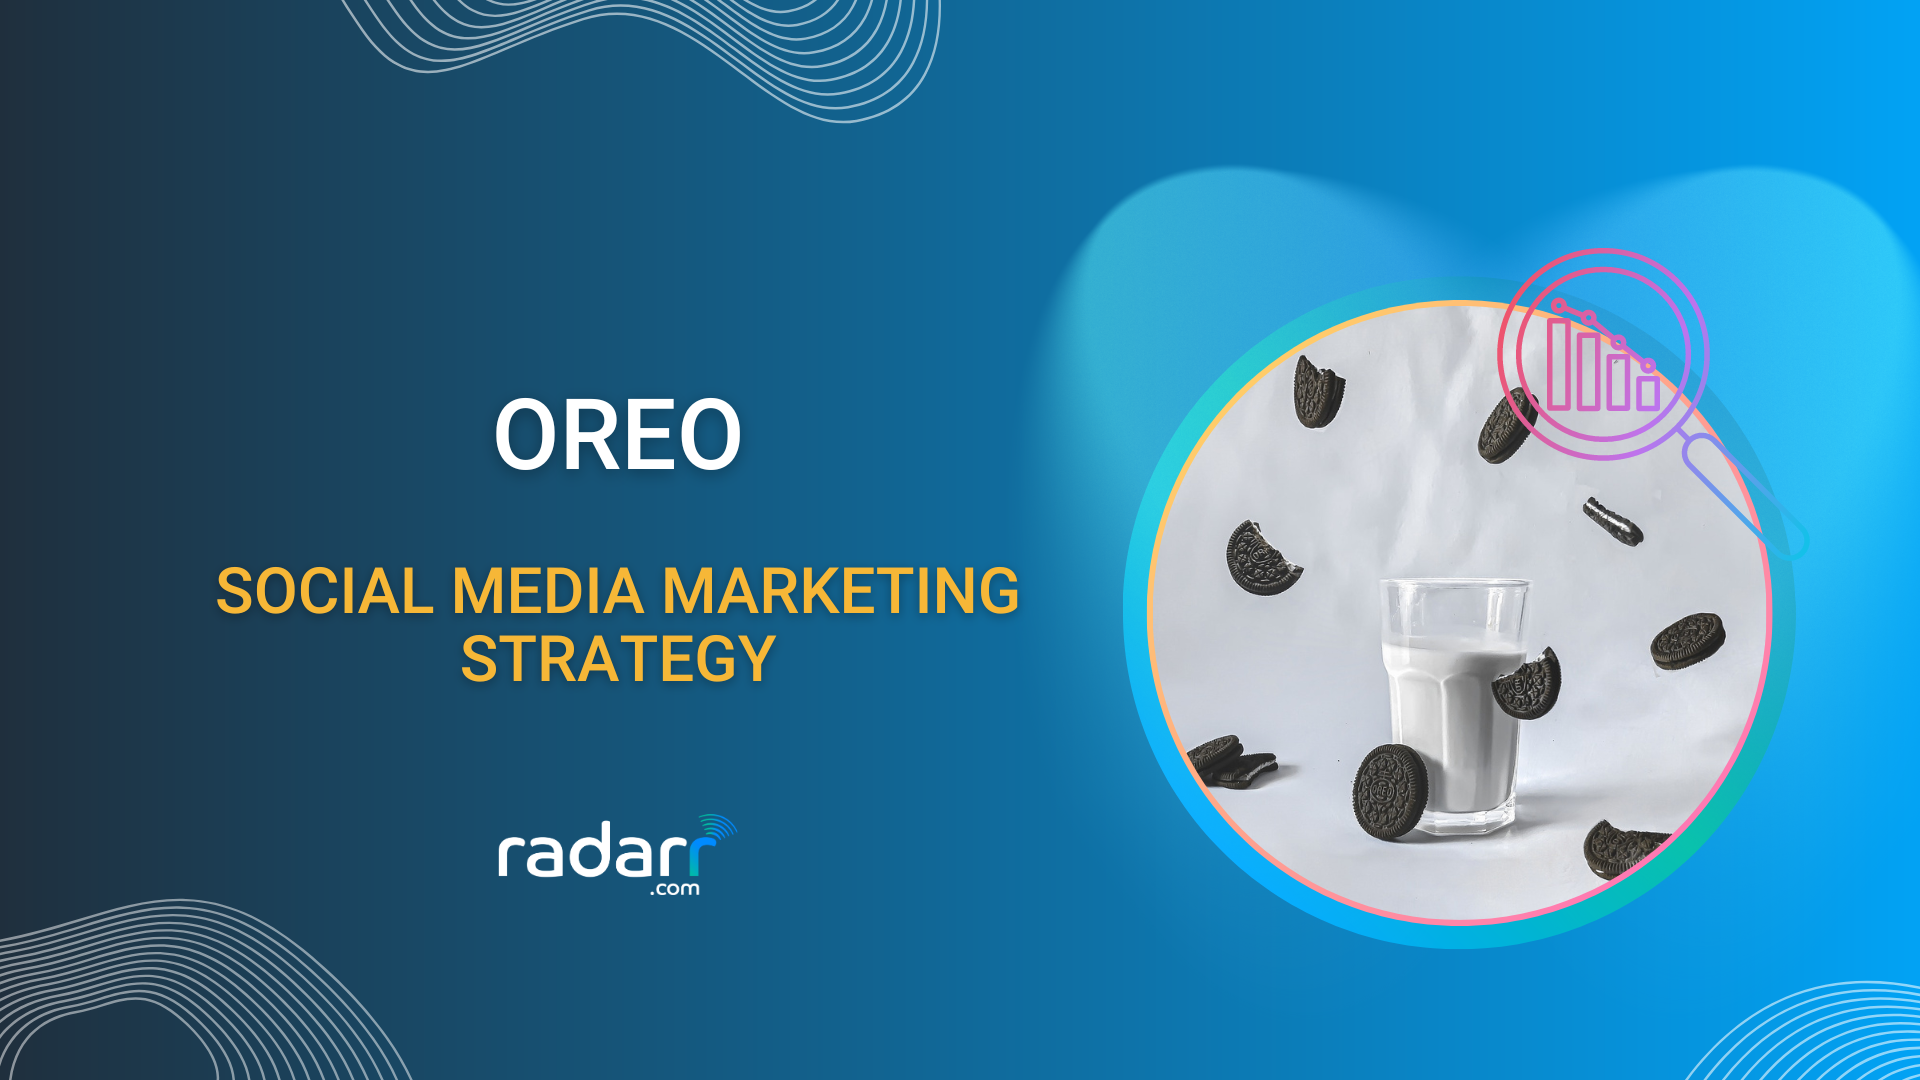 oreo's social media marketing strategy